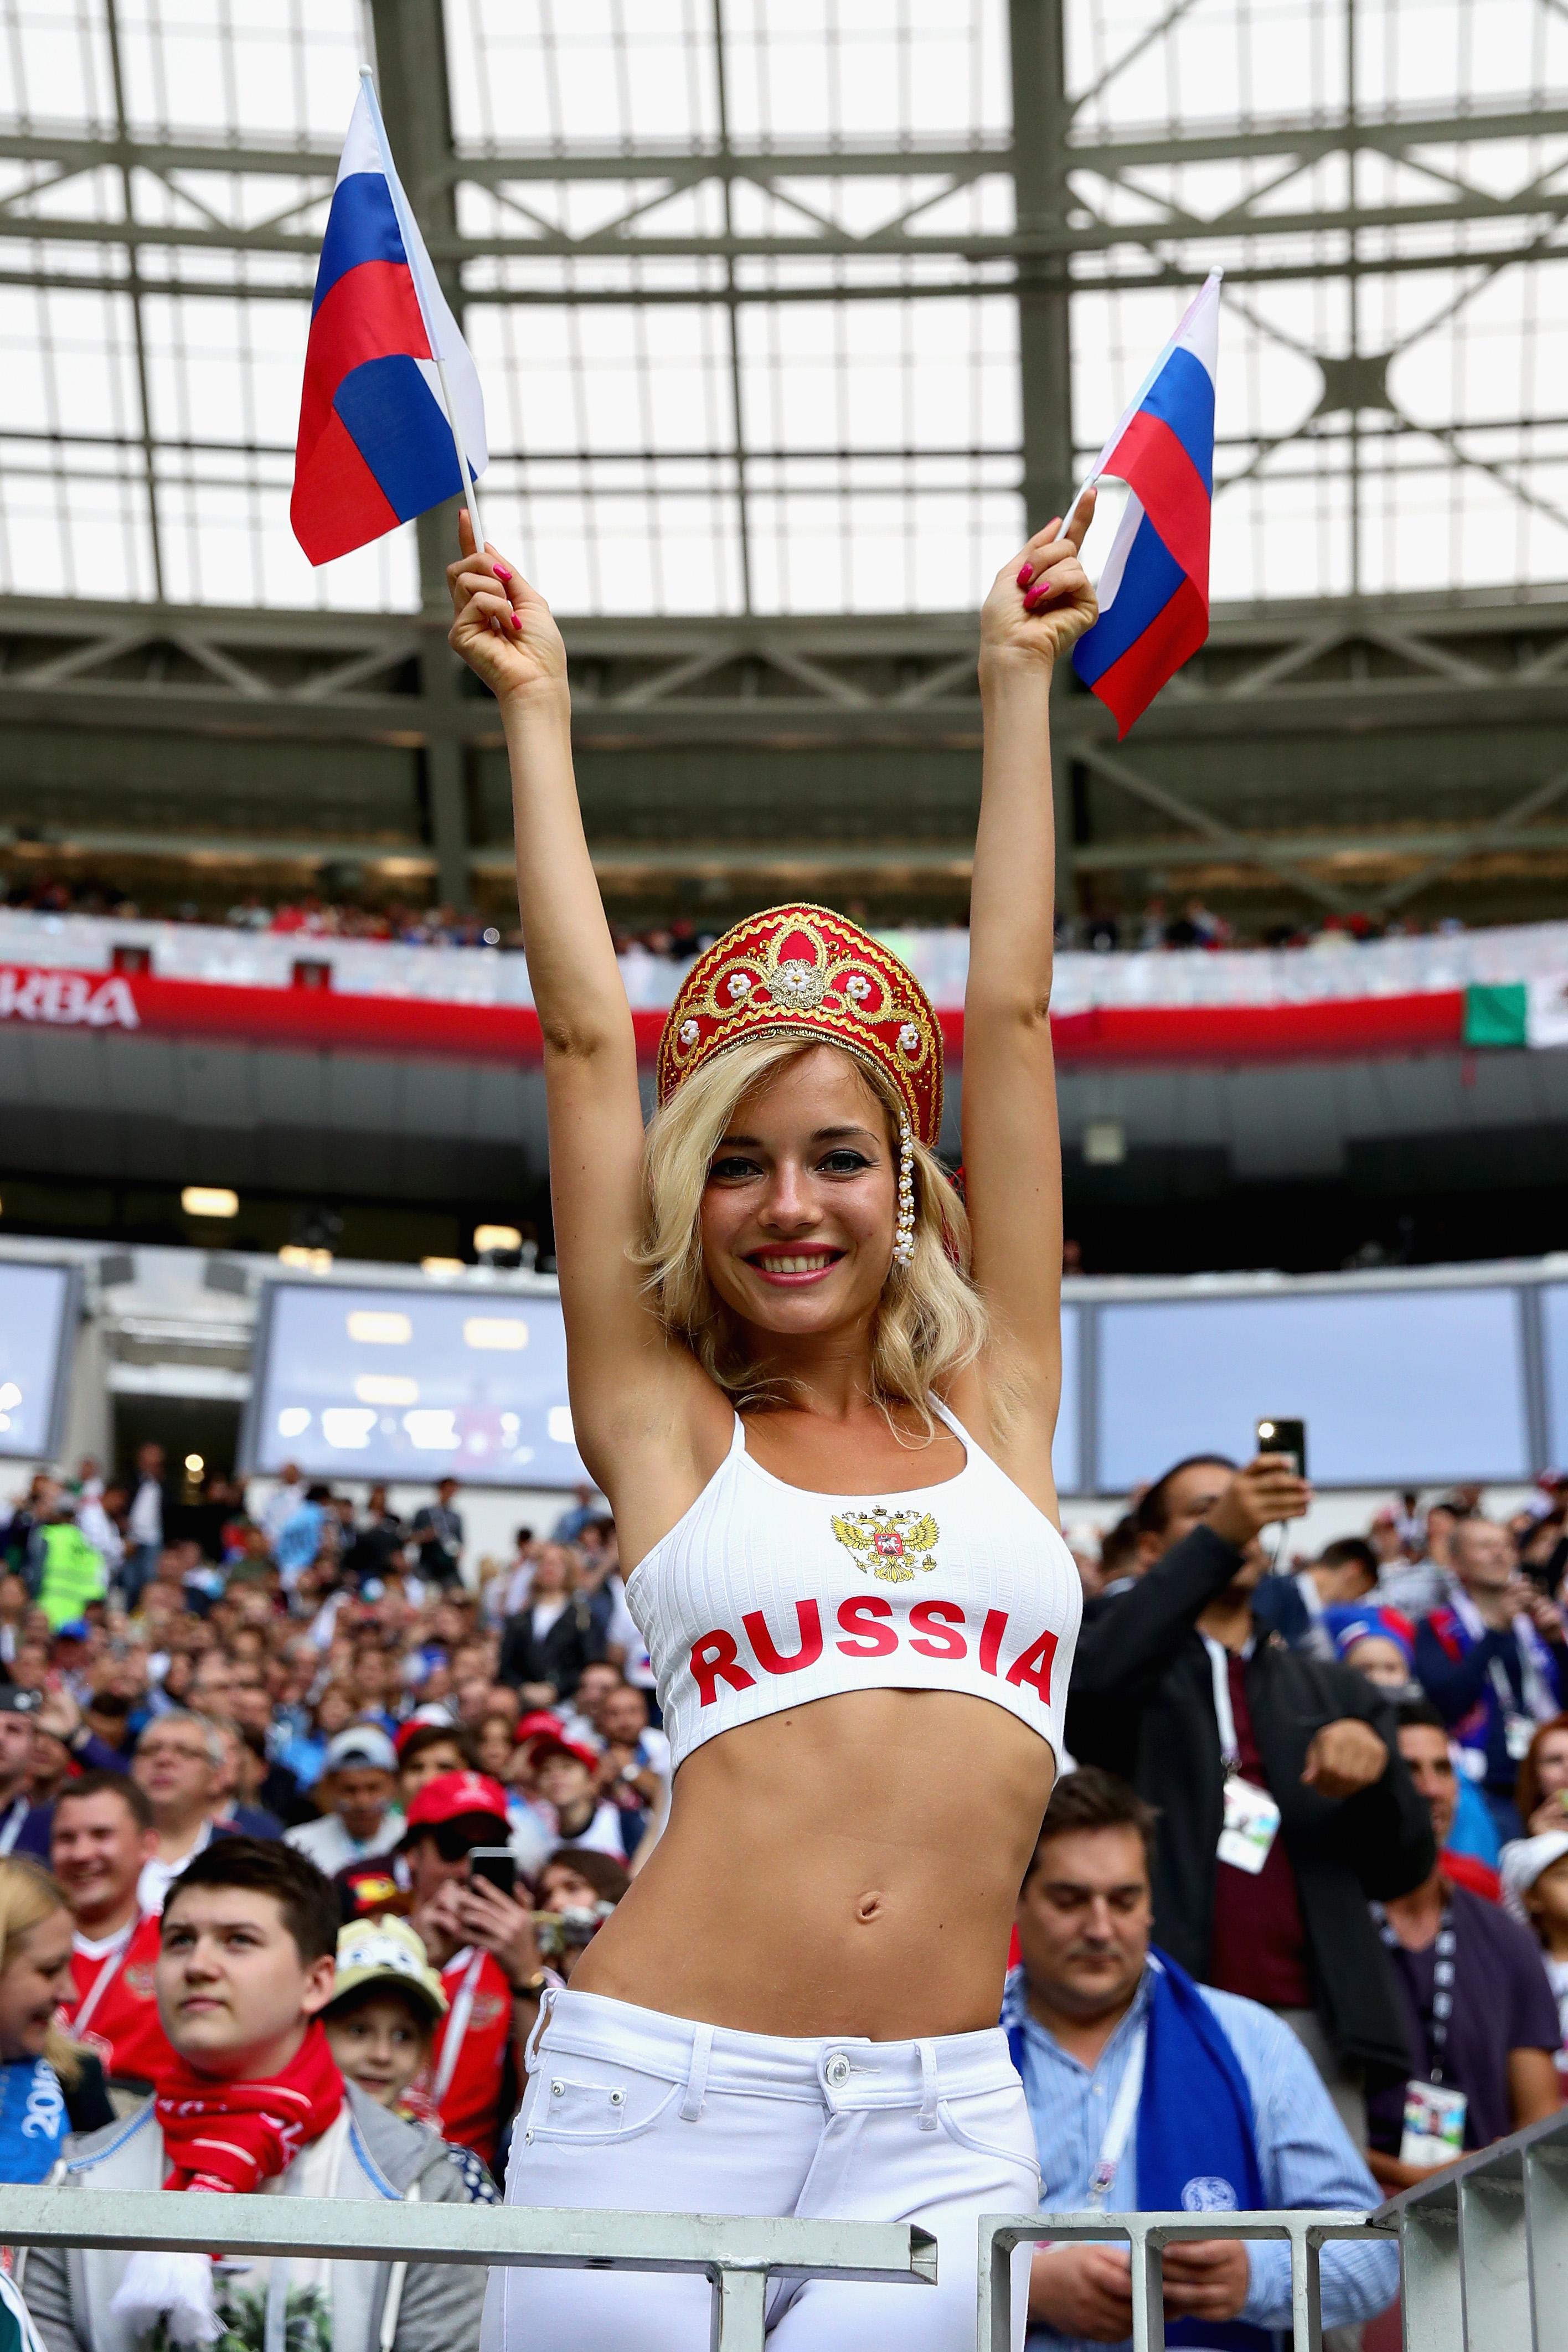 В день открытия турнира на ней был традиционный русский головной убор для победы России над Саудовской Аравией